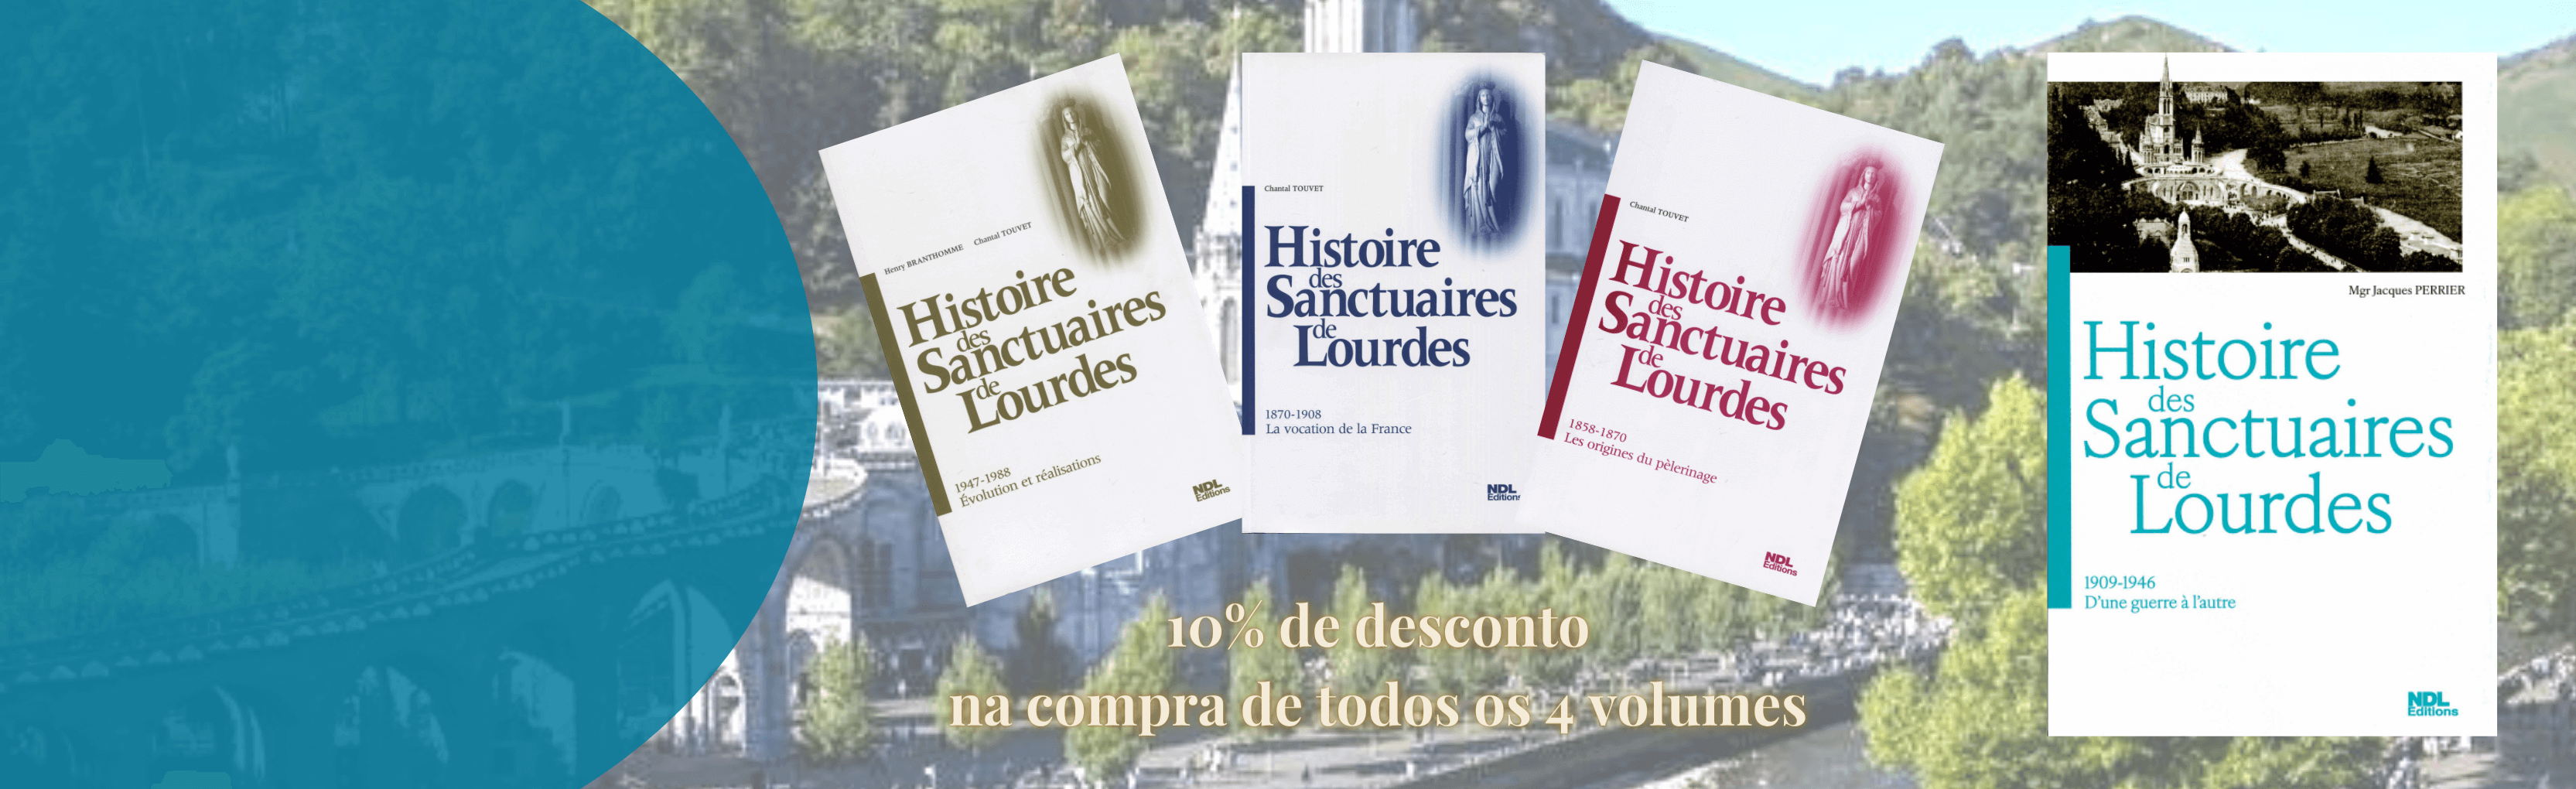 Banner anunciando a publicação do quarto volume da série, History of the Sanctuaries of Lourdes (História dos Santuários de Lourdes)